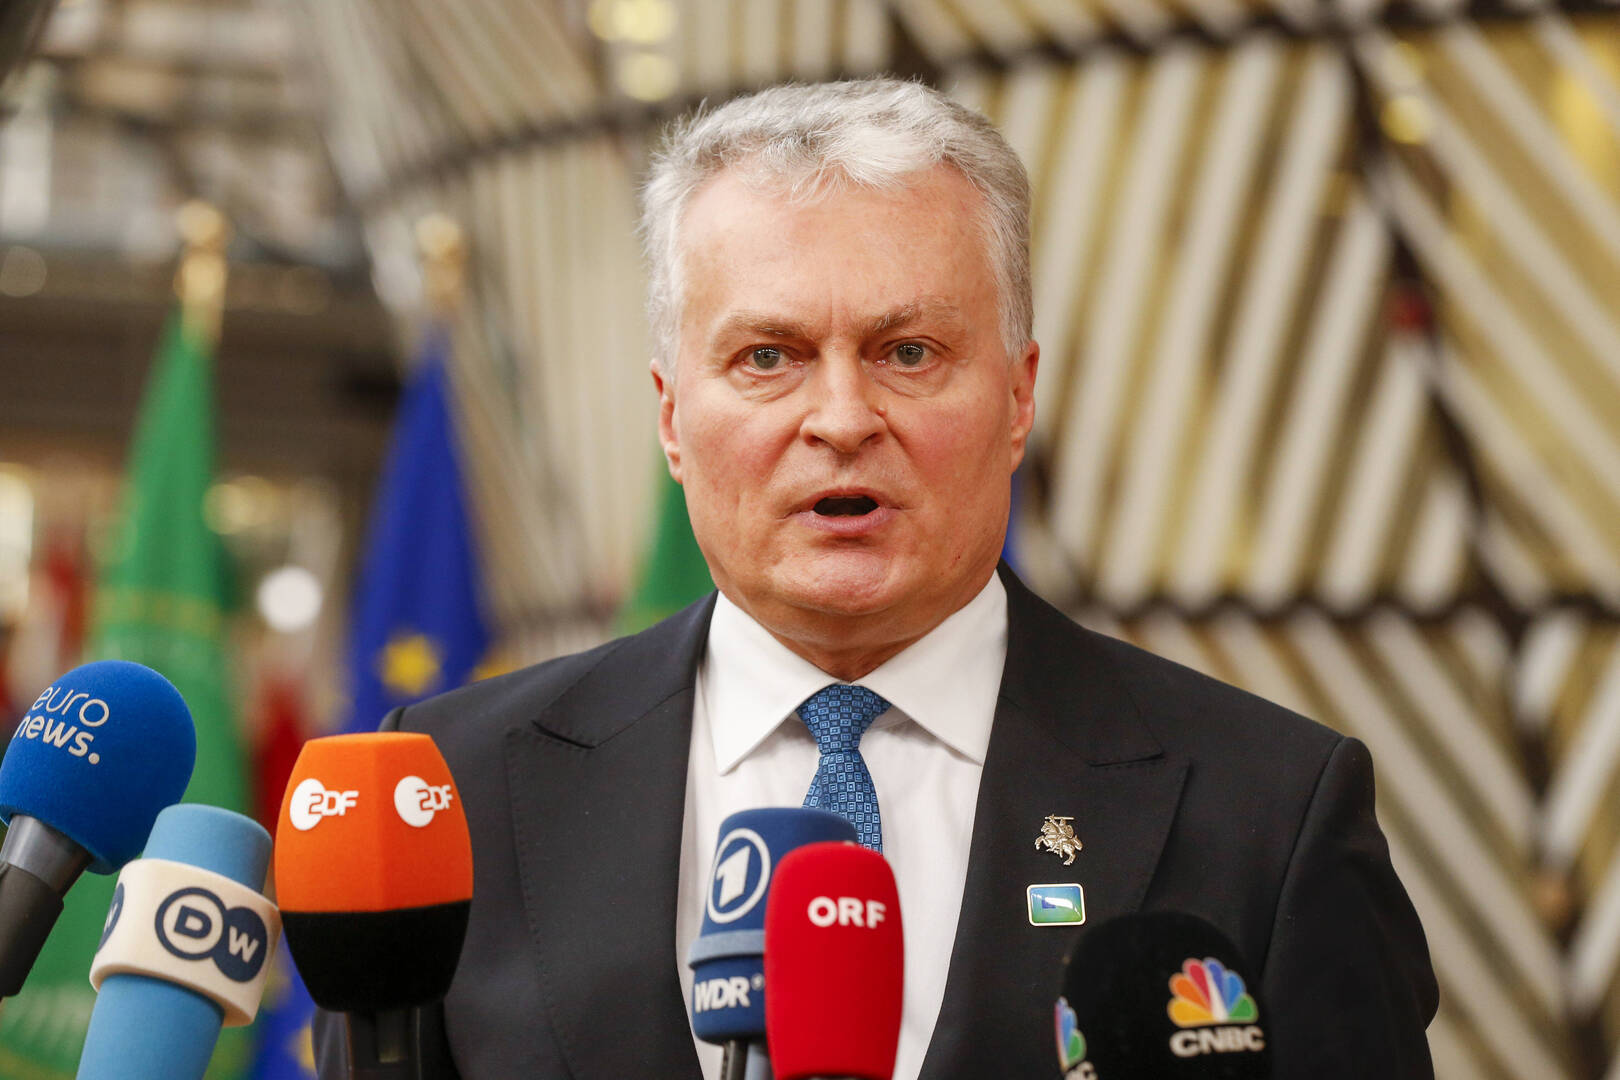 رئيس ليتوانيا: العقوبات يجب أن تستهدف قطاع الطاقة الروسي أولا